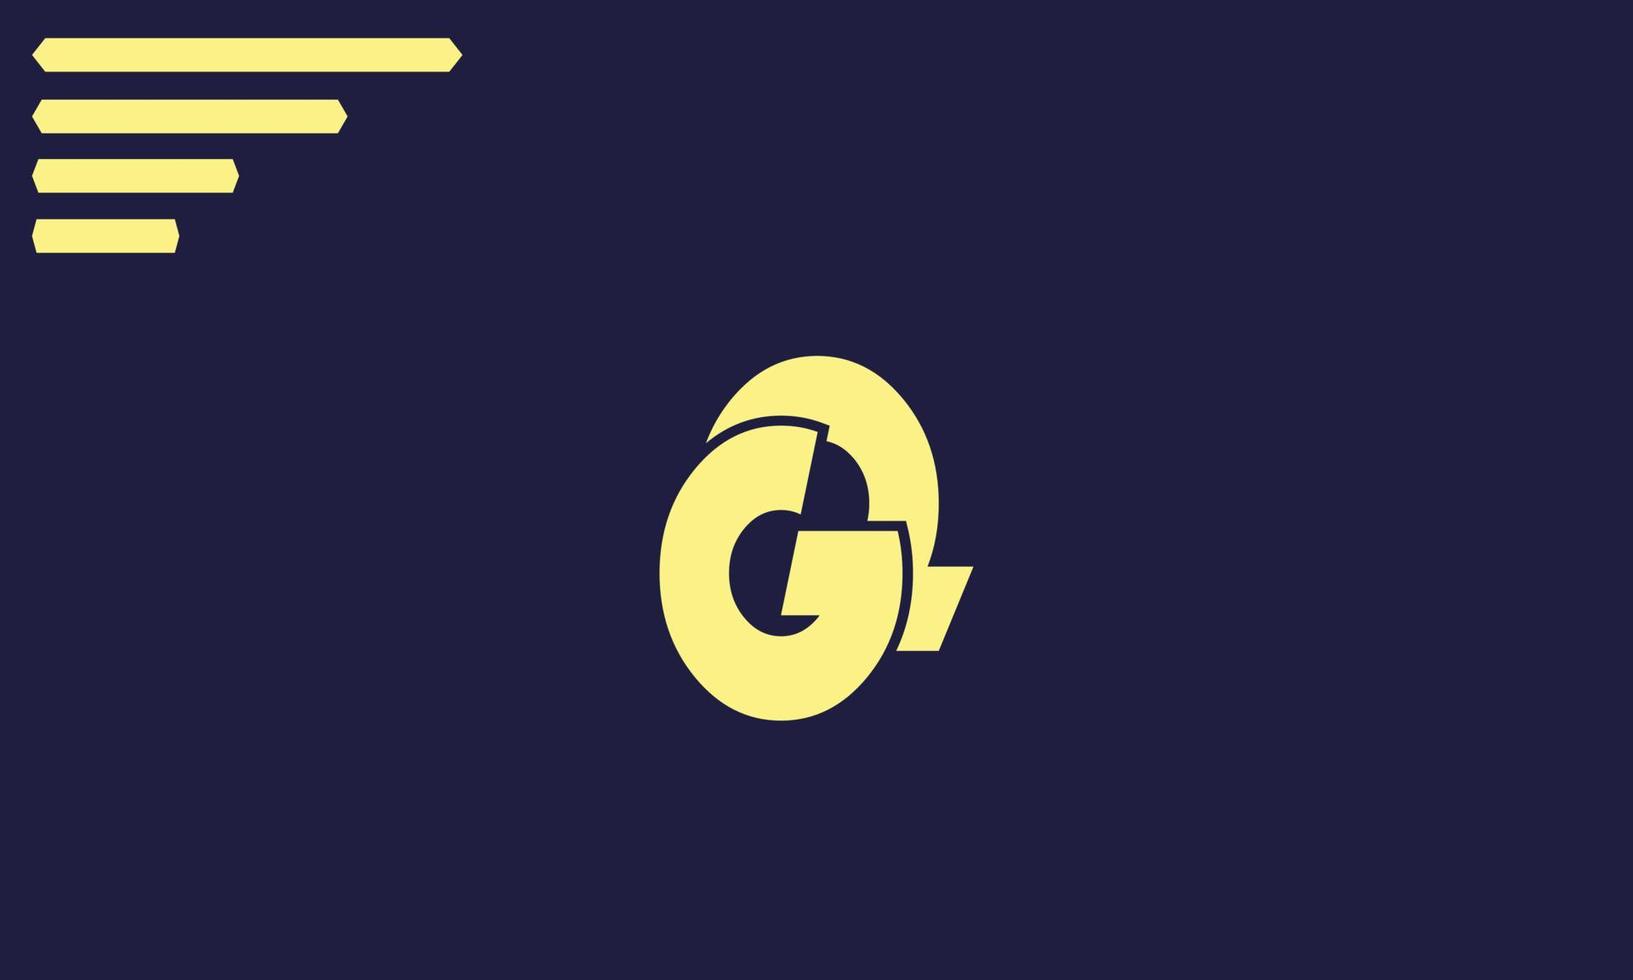 letras do alfabeto iniciais monograma logotipo gq, qg, g e q vetor